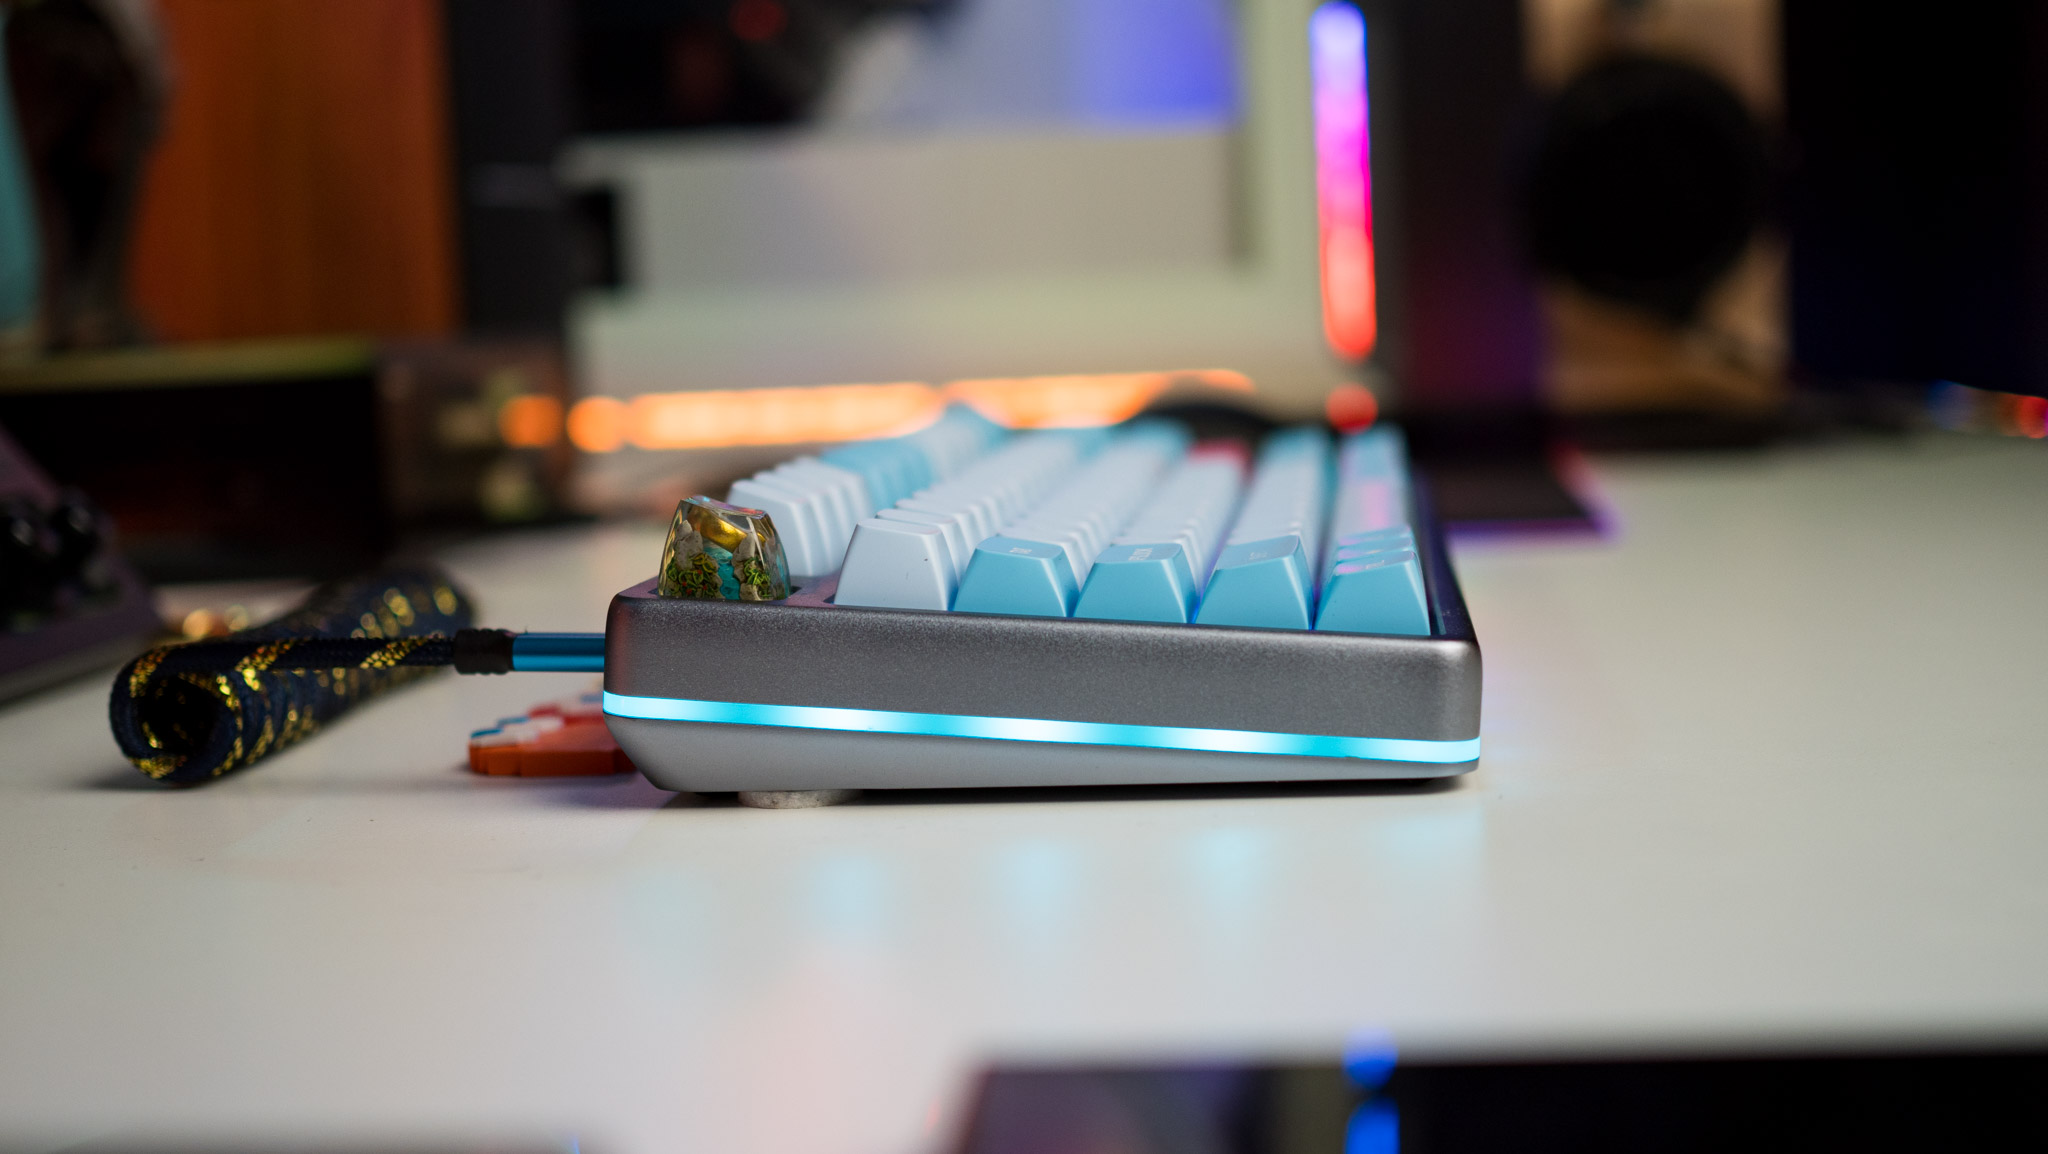 Drop Americana Keyboard com vista lateral apresentando iluminação RGB